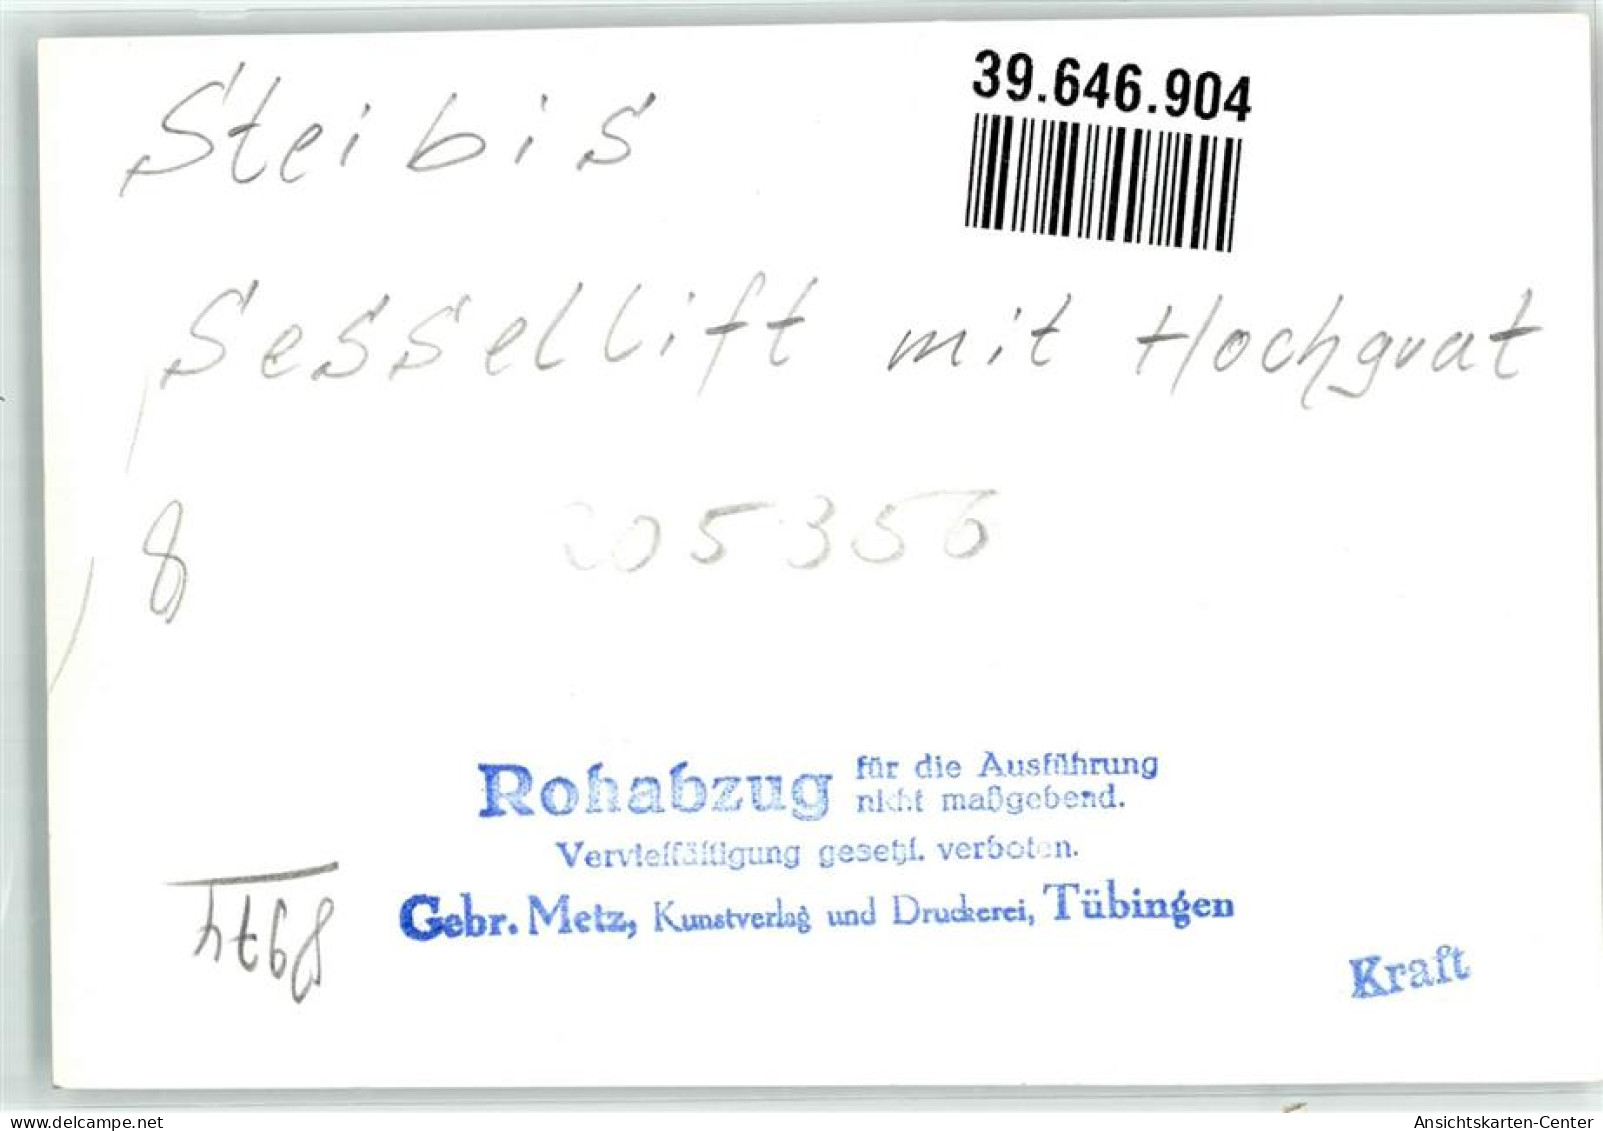 39646904 - Steibis - Oberstaufen